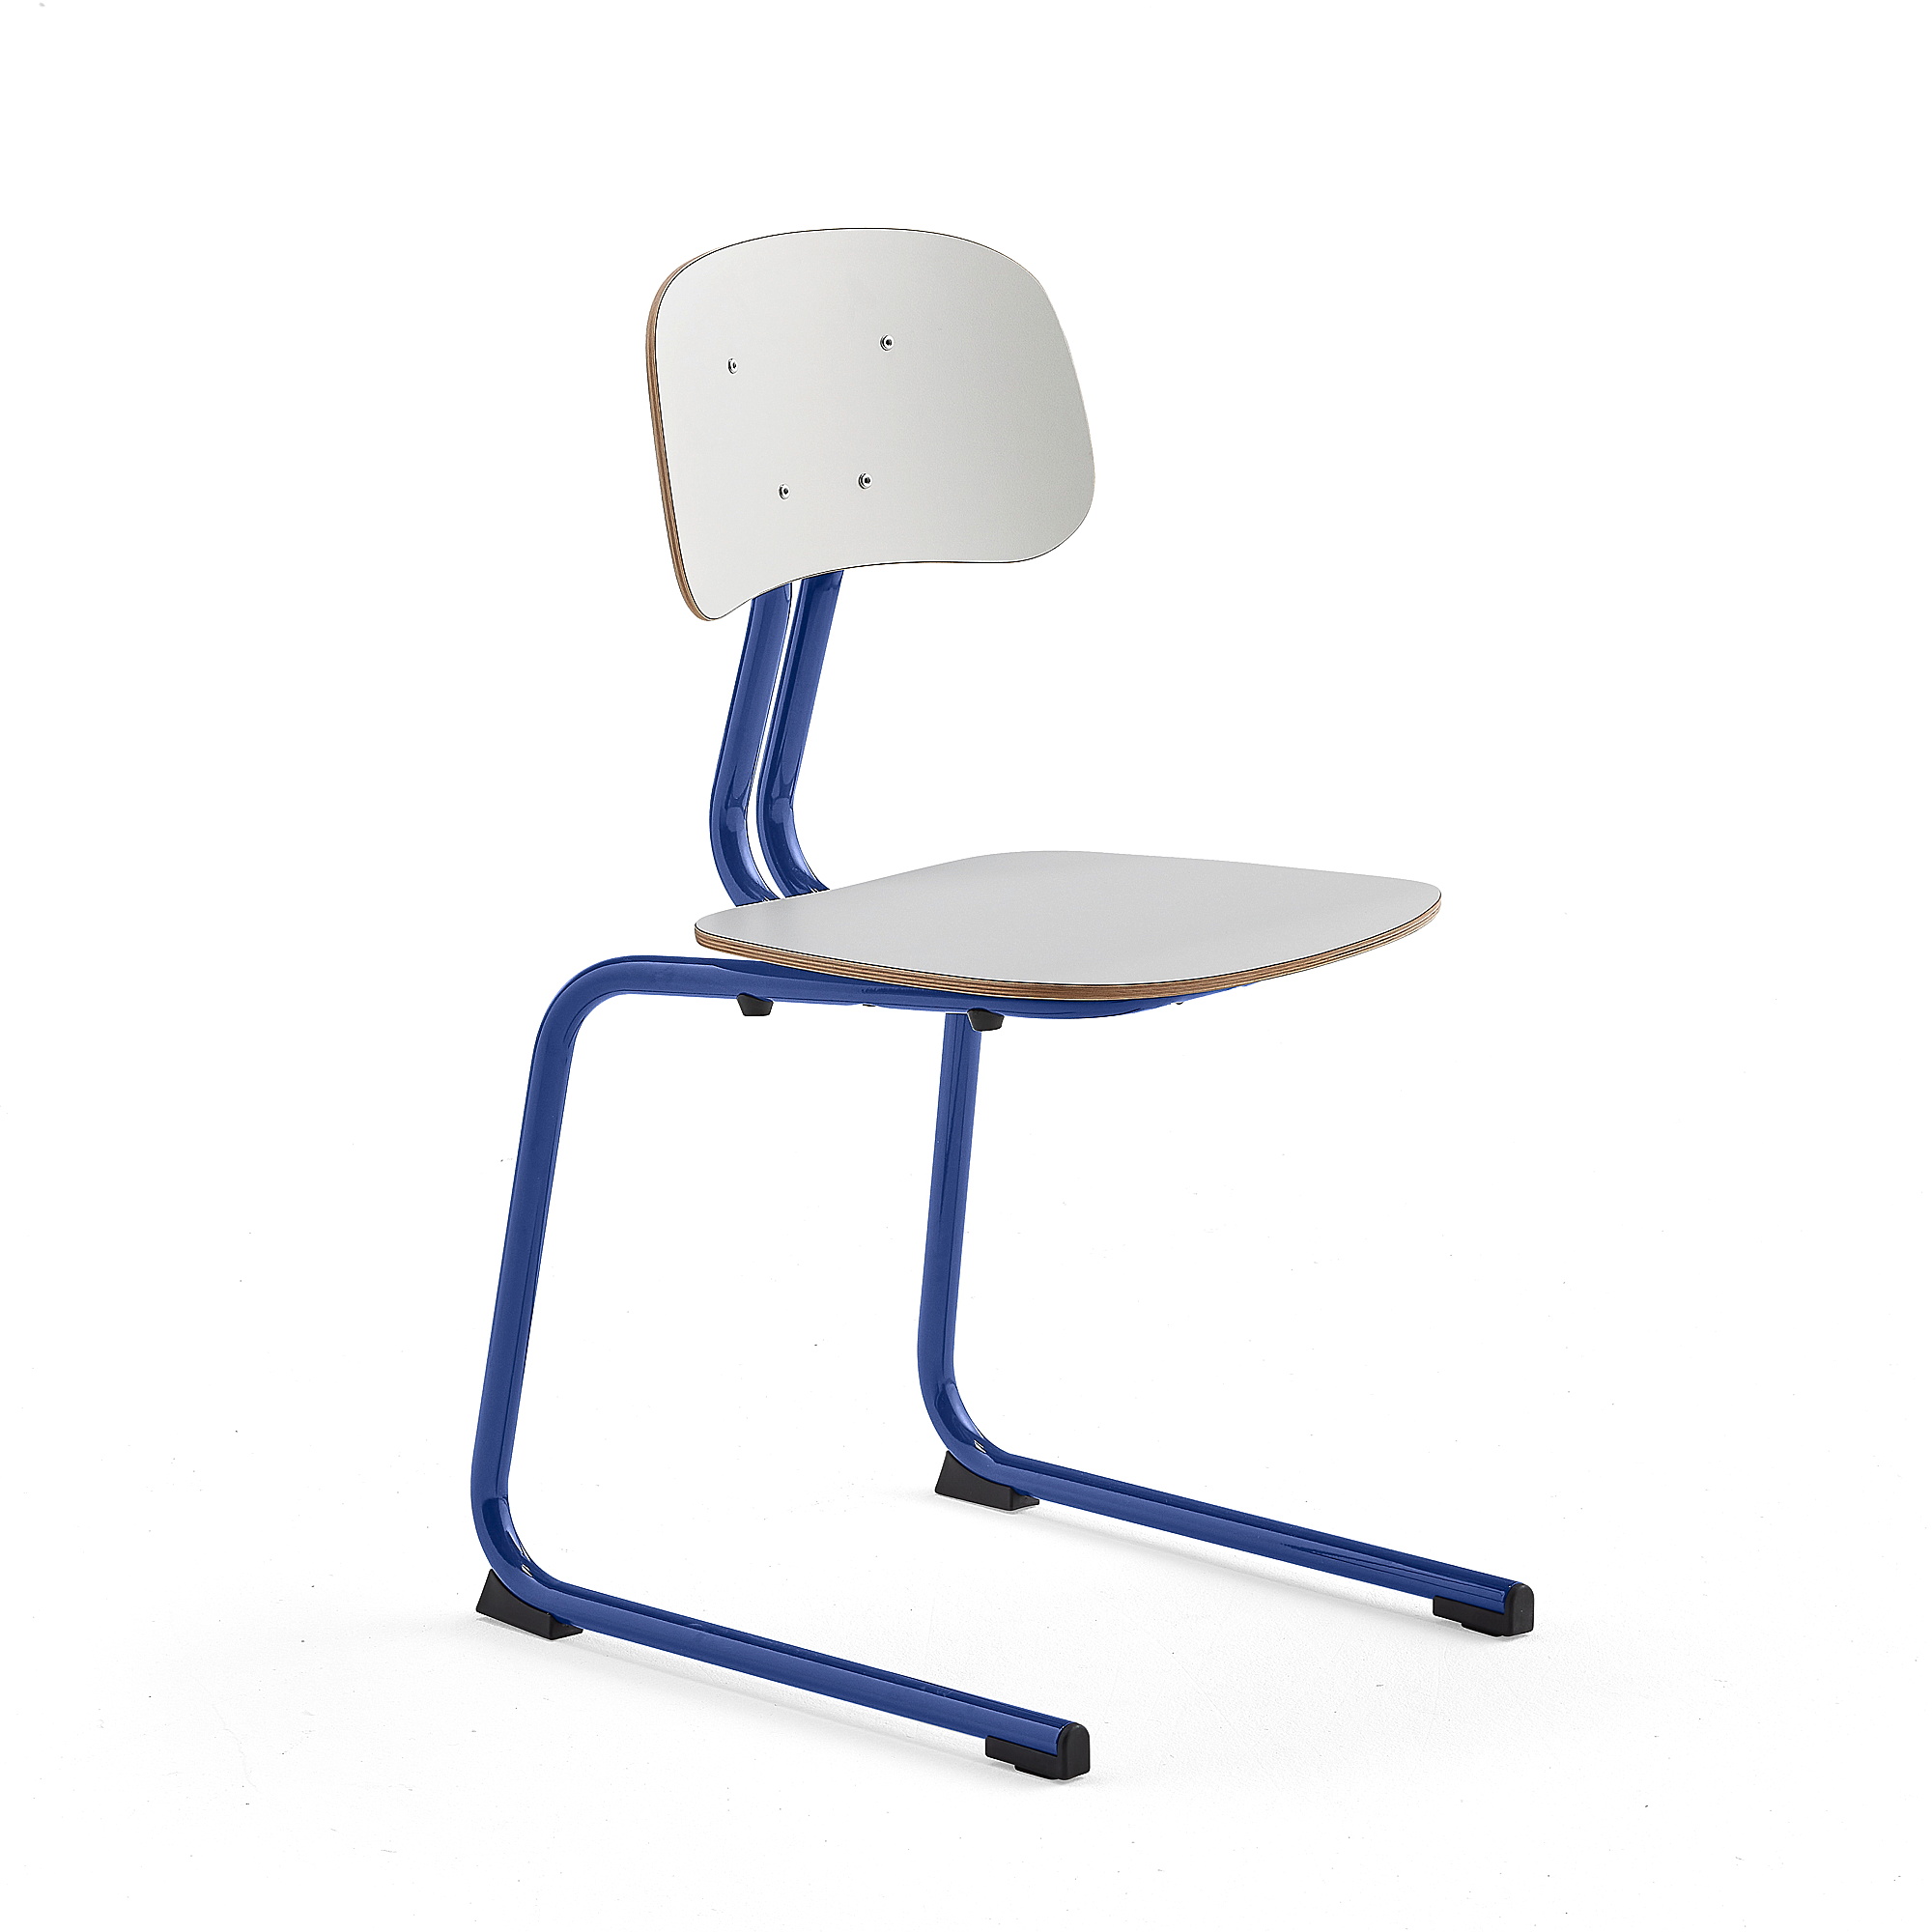 Školní židle YNGVE, ližinová podnož, výška 460 mm, tmavě modrá/bílá